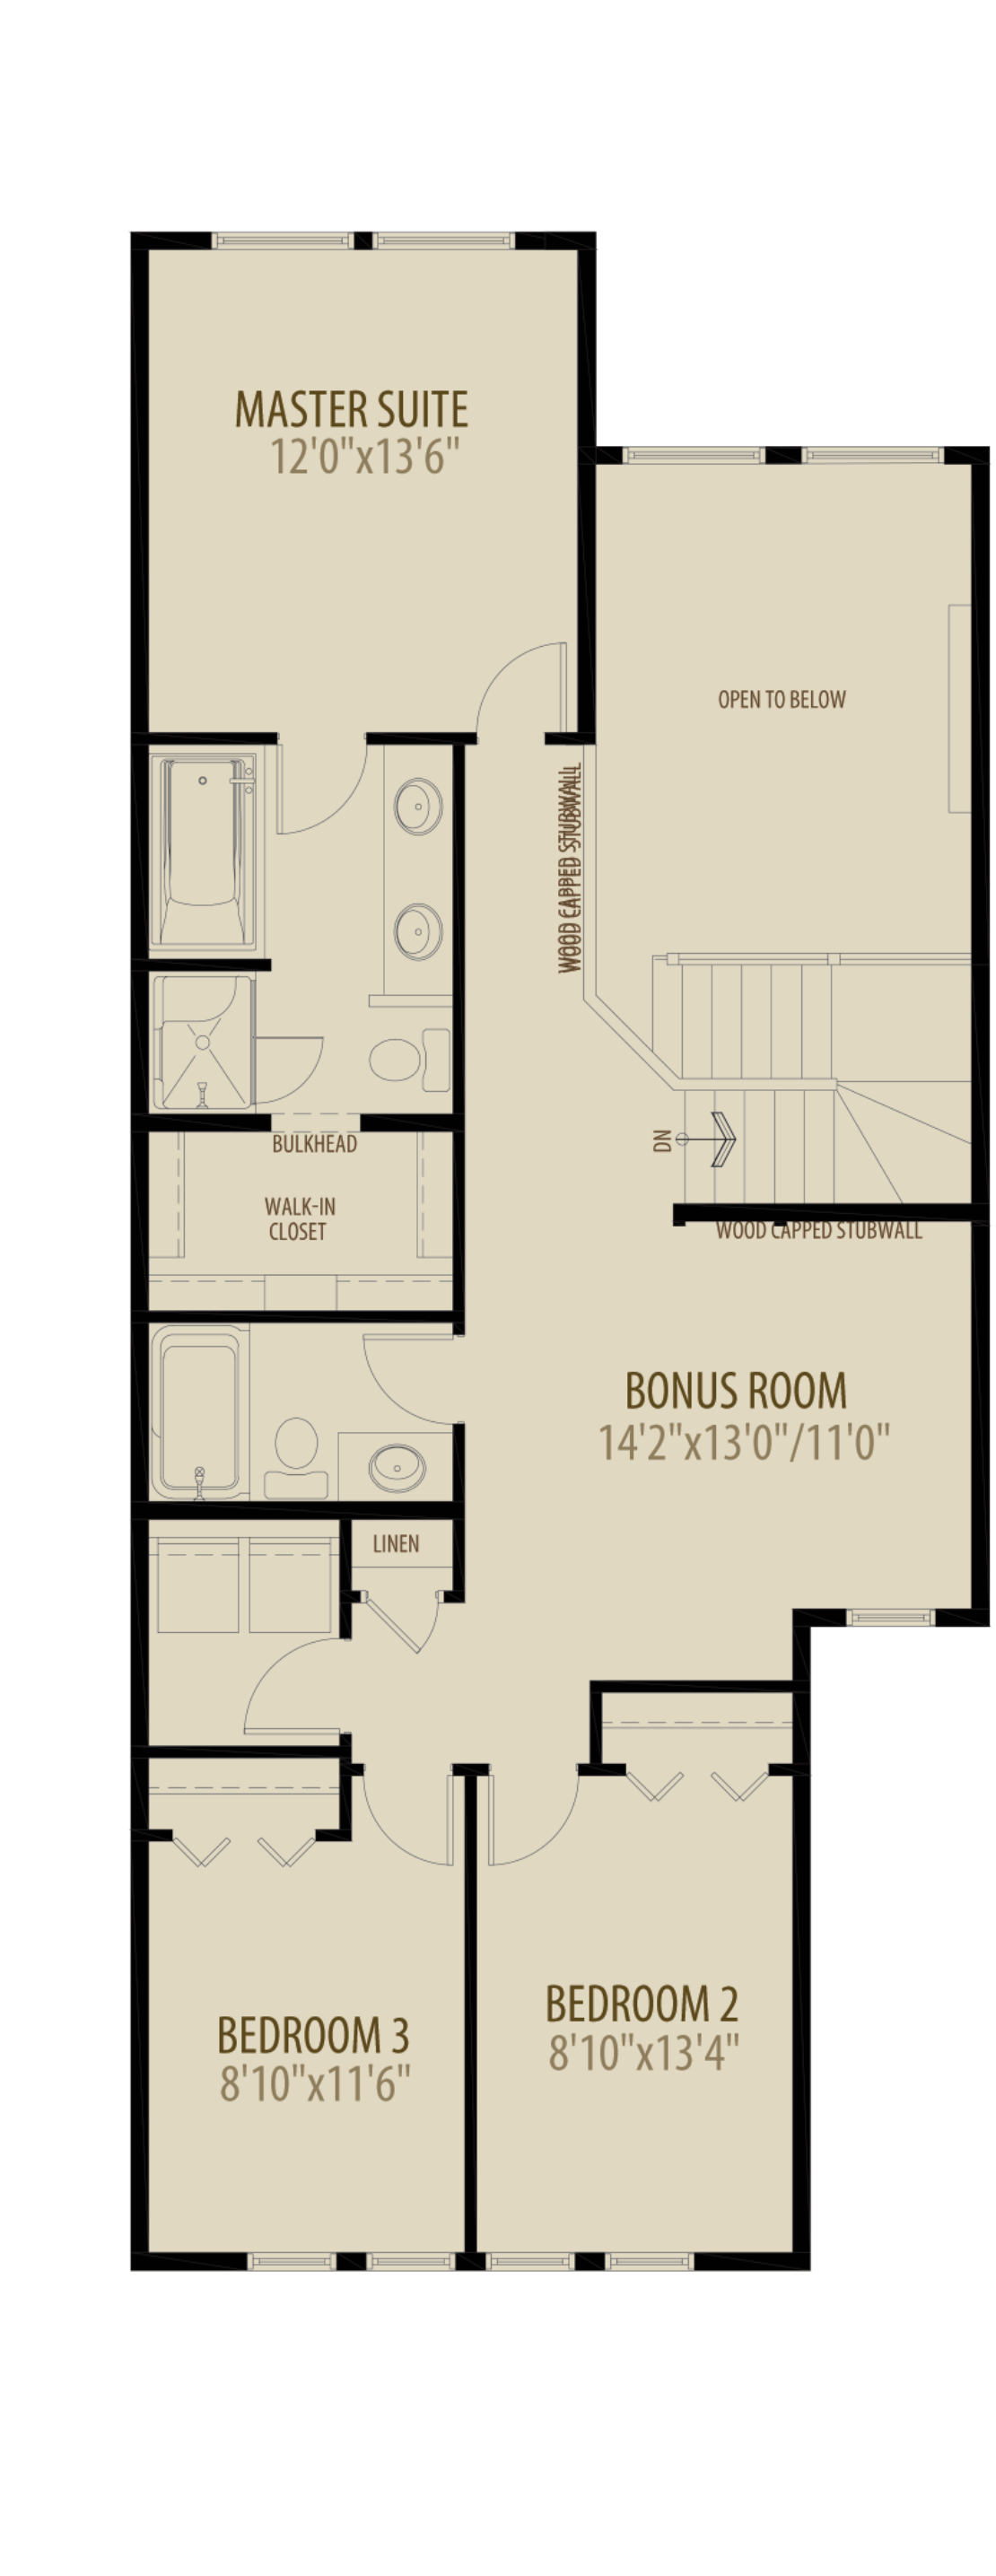 Open To Below Bonus Room Removes 55 sq ft Upper